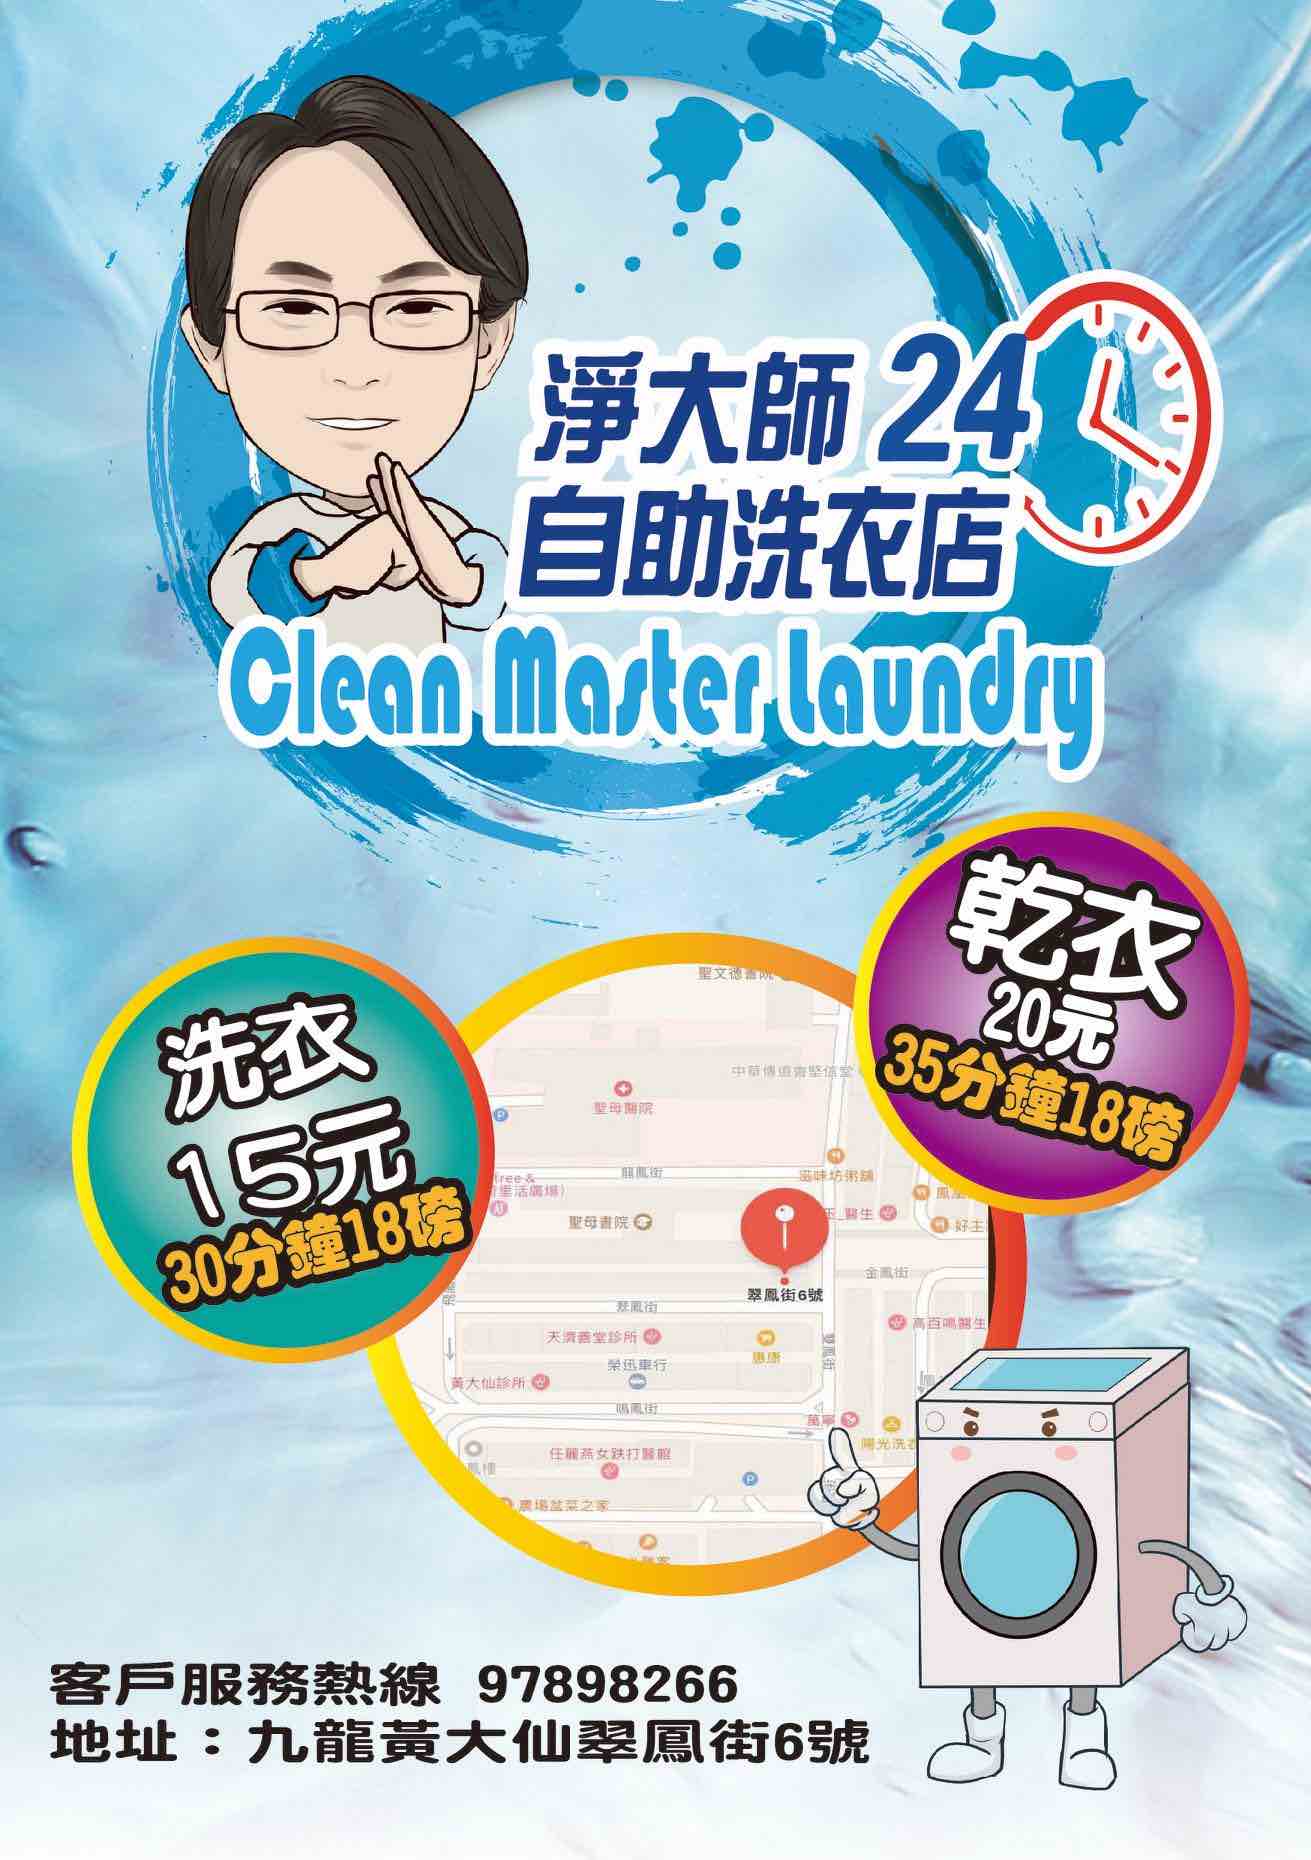 淨大師自助洗衣店的特許經營香港區加盟店項目3